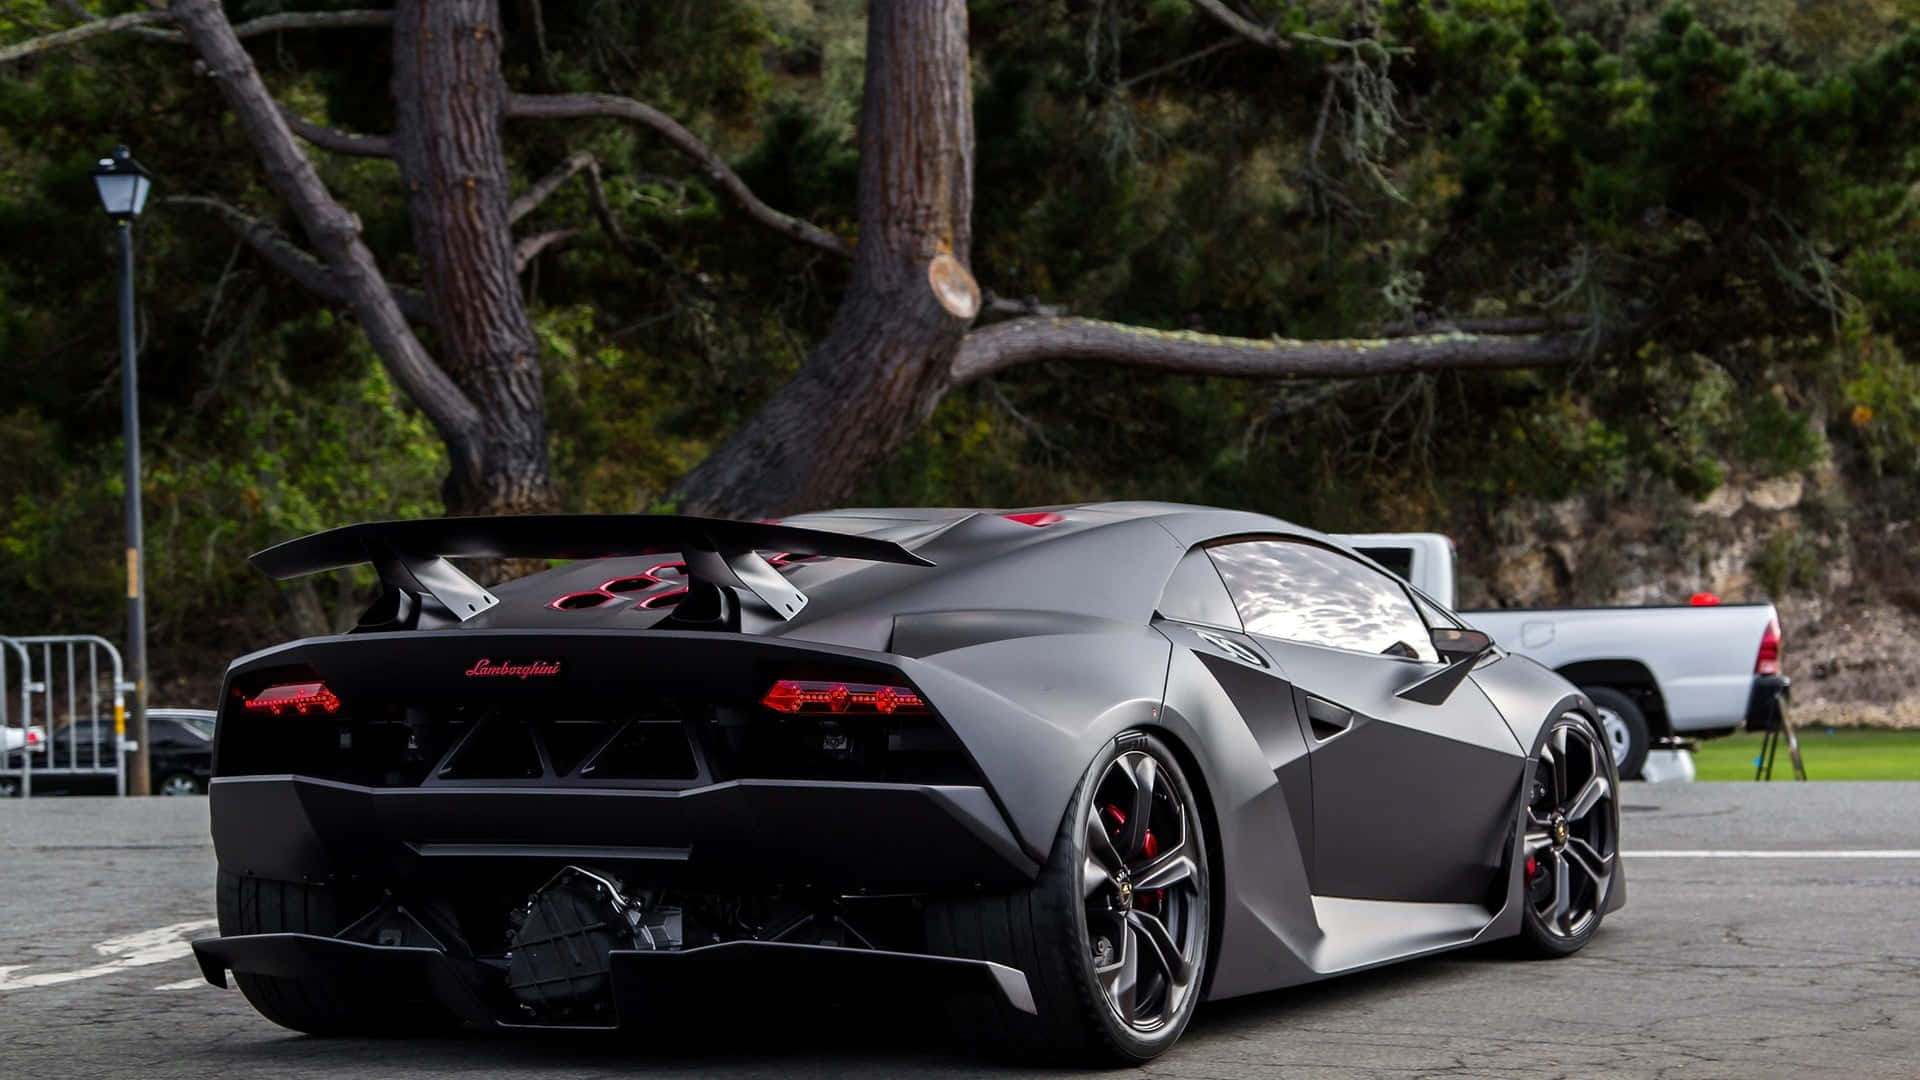 Lamborghini Sesto Elemento – Racing Mastery in Carbon Wallpaper